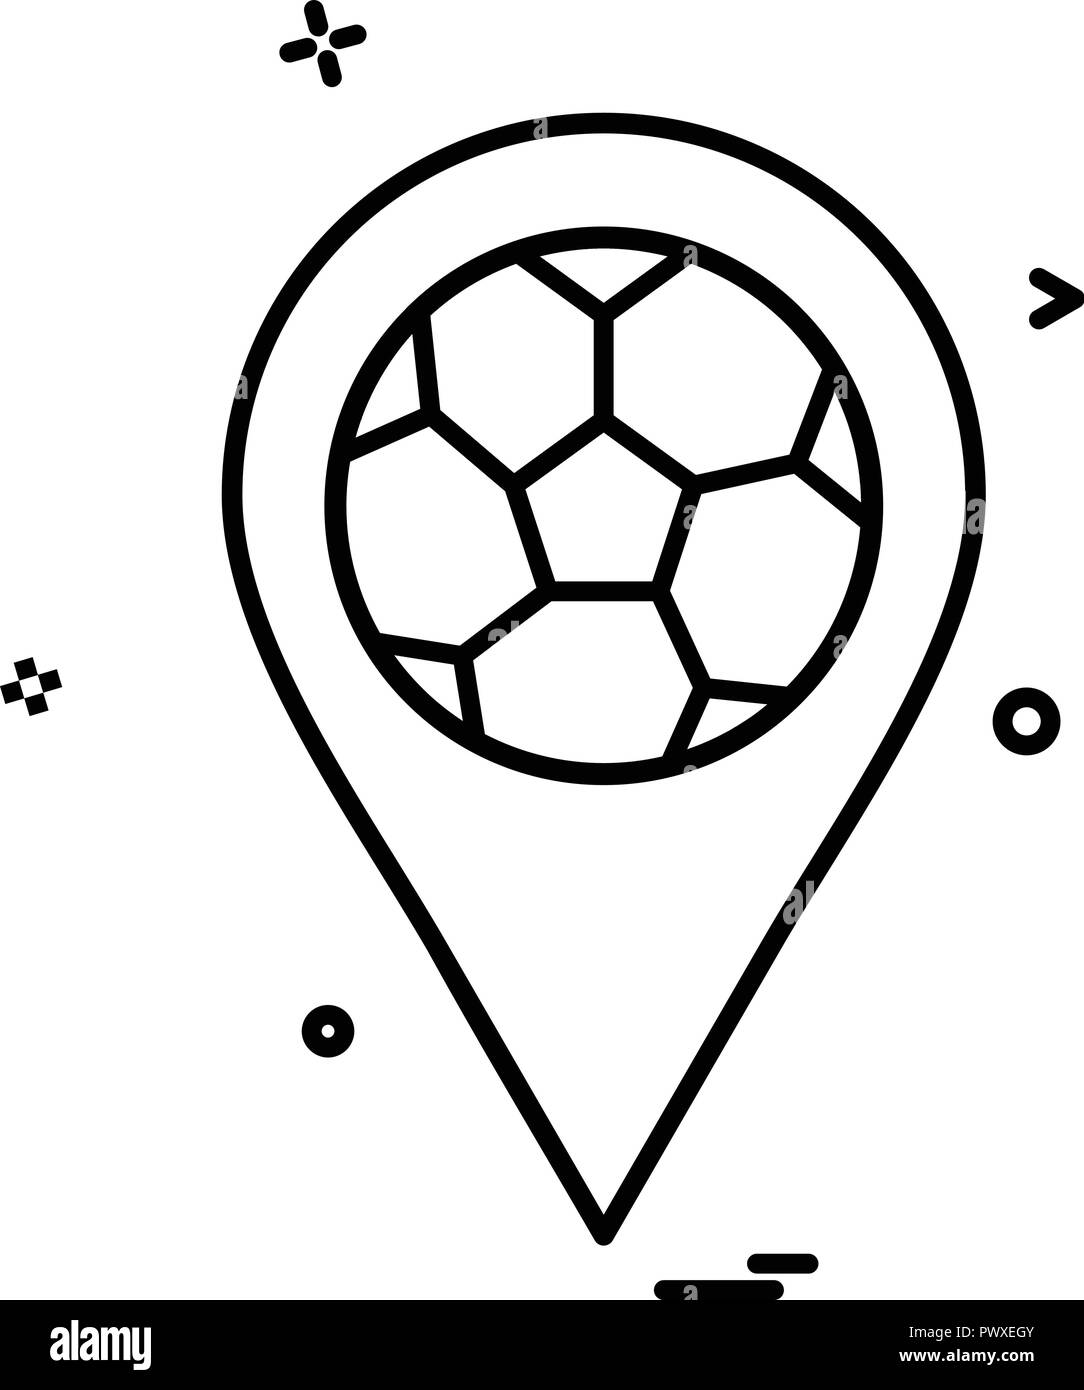 map football icon vector design Stock Vector